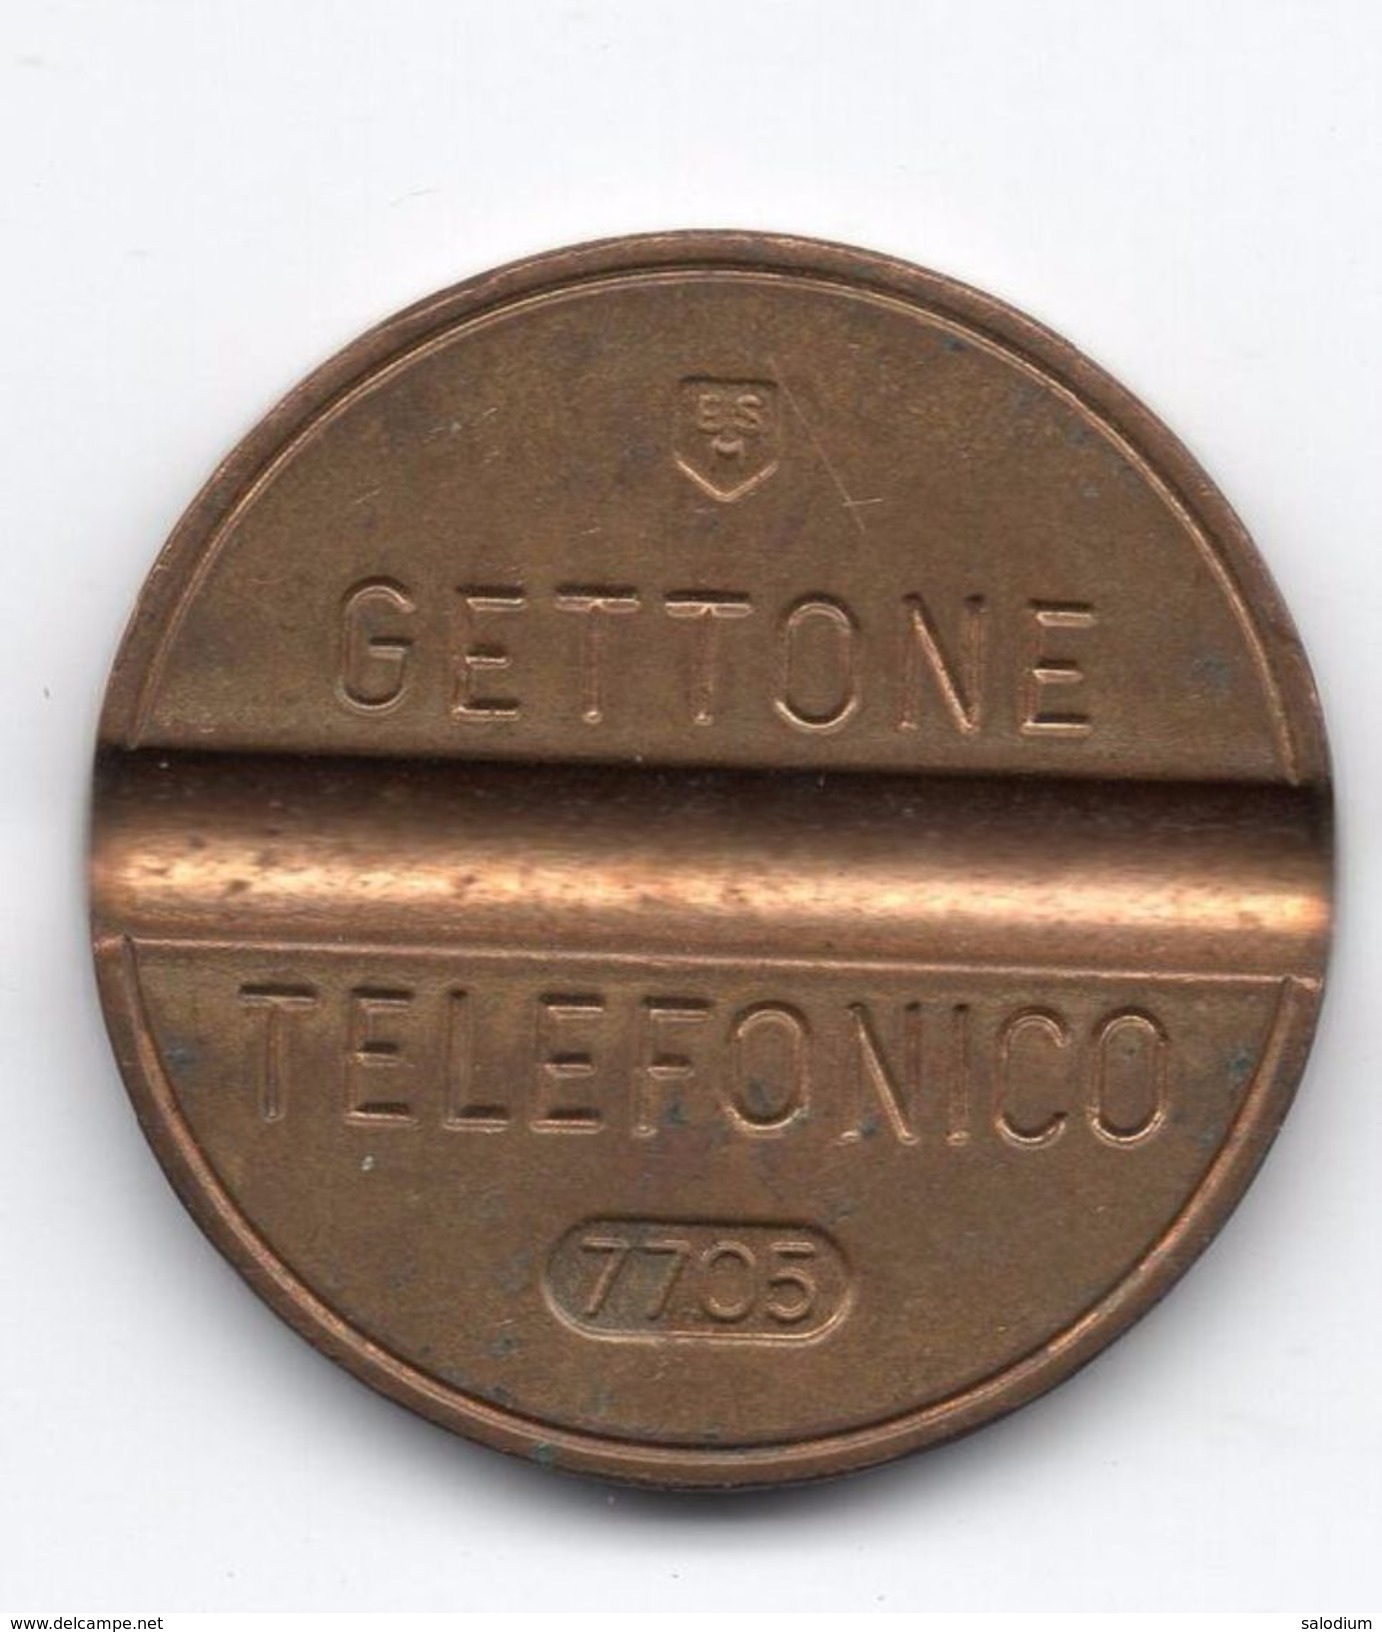 Gettone Telefonico 7705 Token Telephone - (Id-858) - Professionnels/De Société